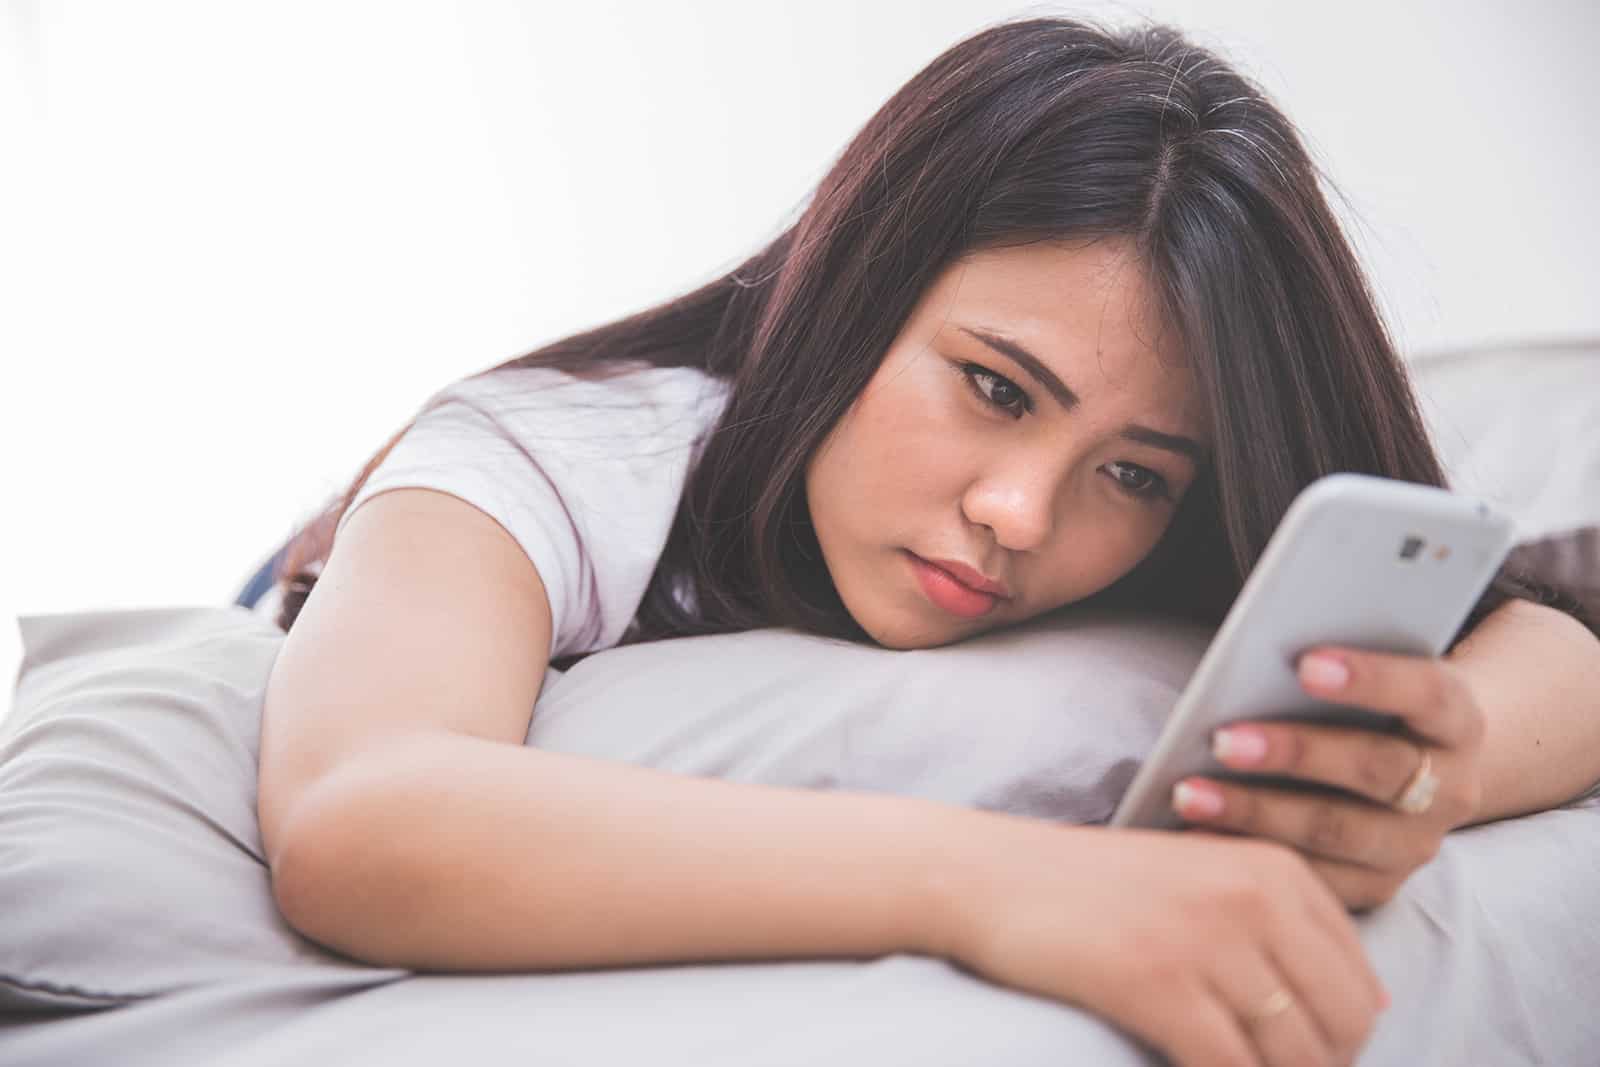 eine Frau, die traurig aussieht und ein Smartphone benutzt, das auf dem Bett liegt